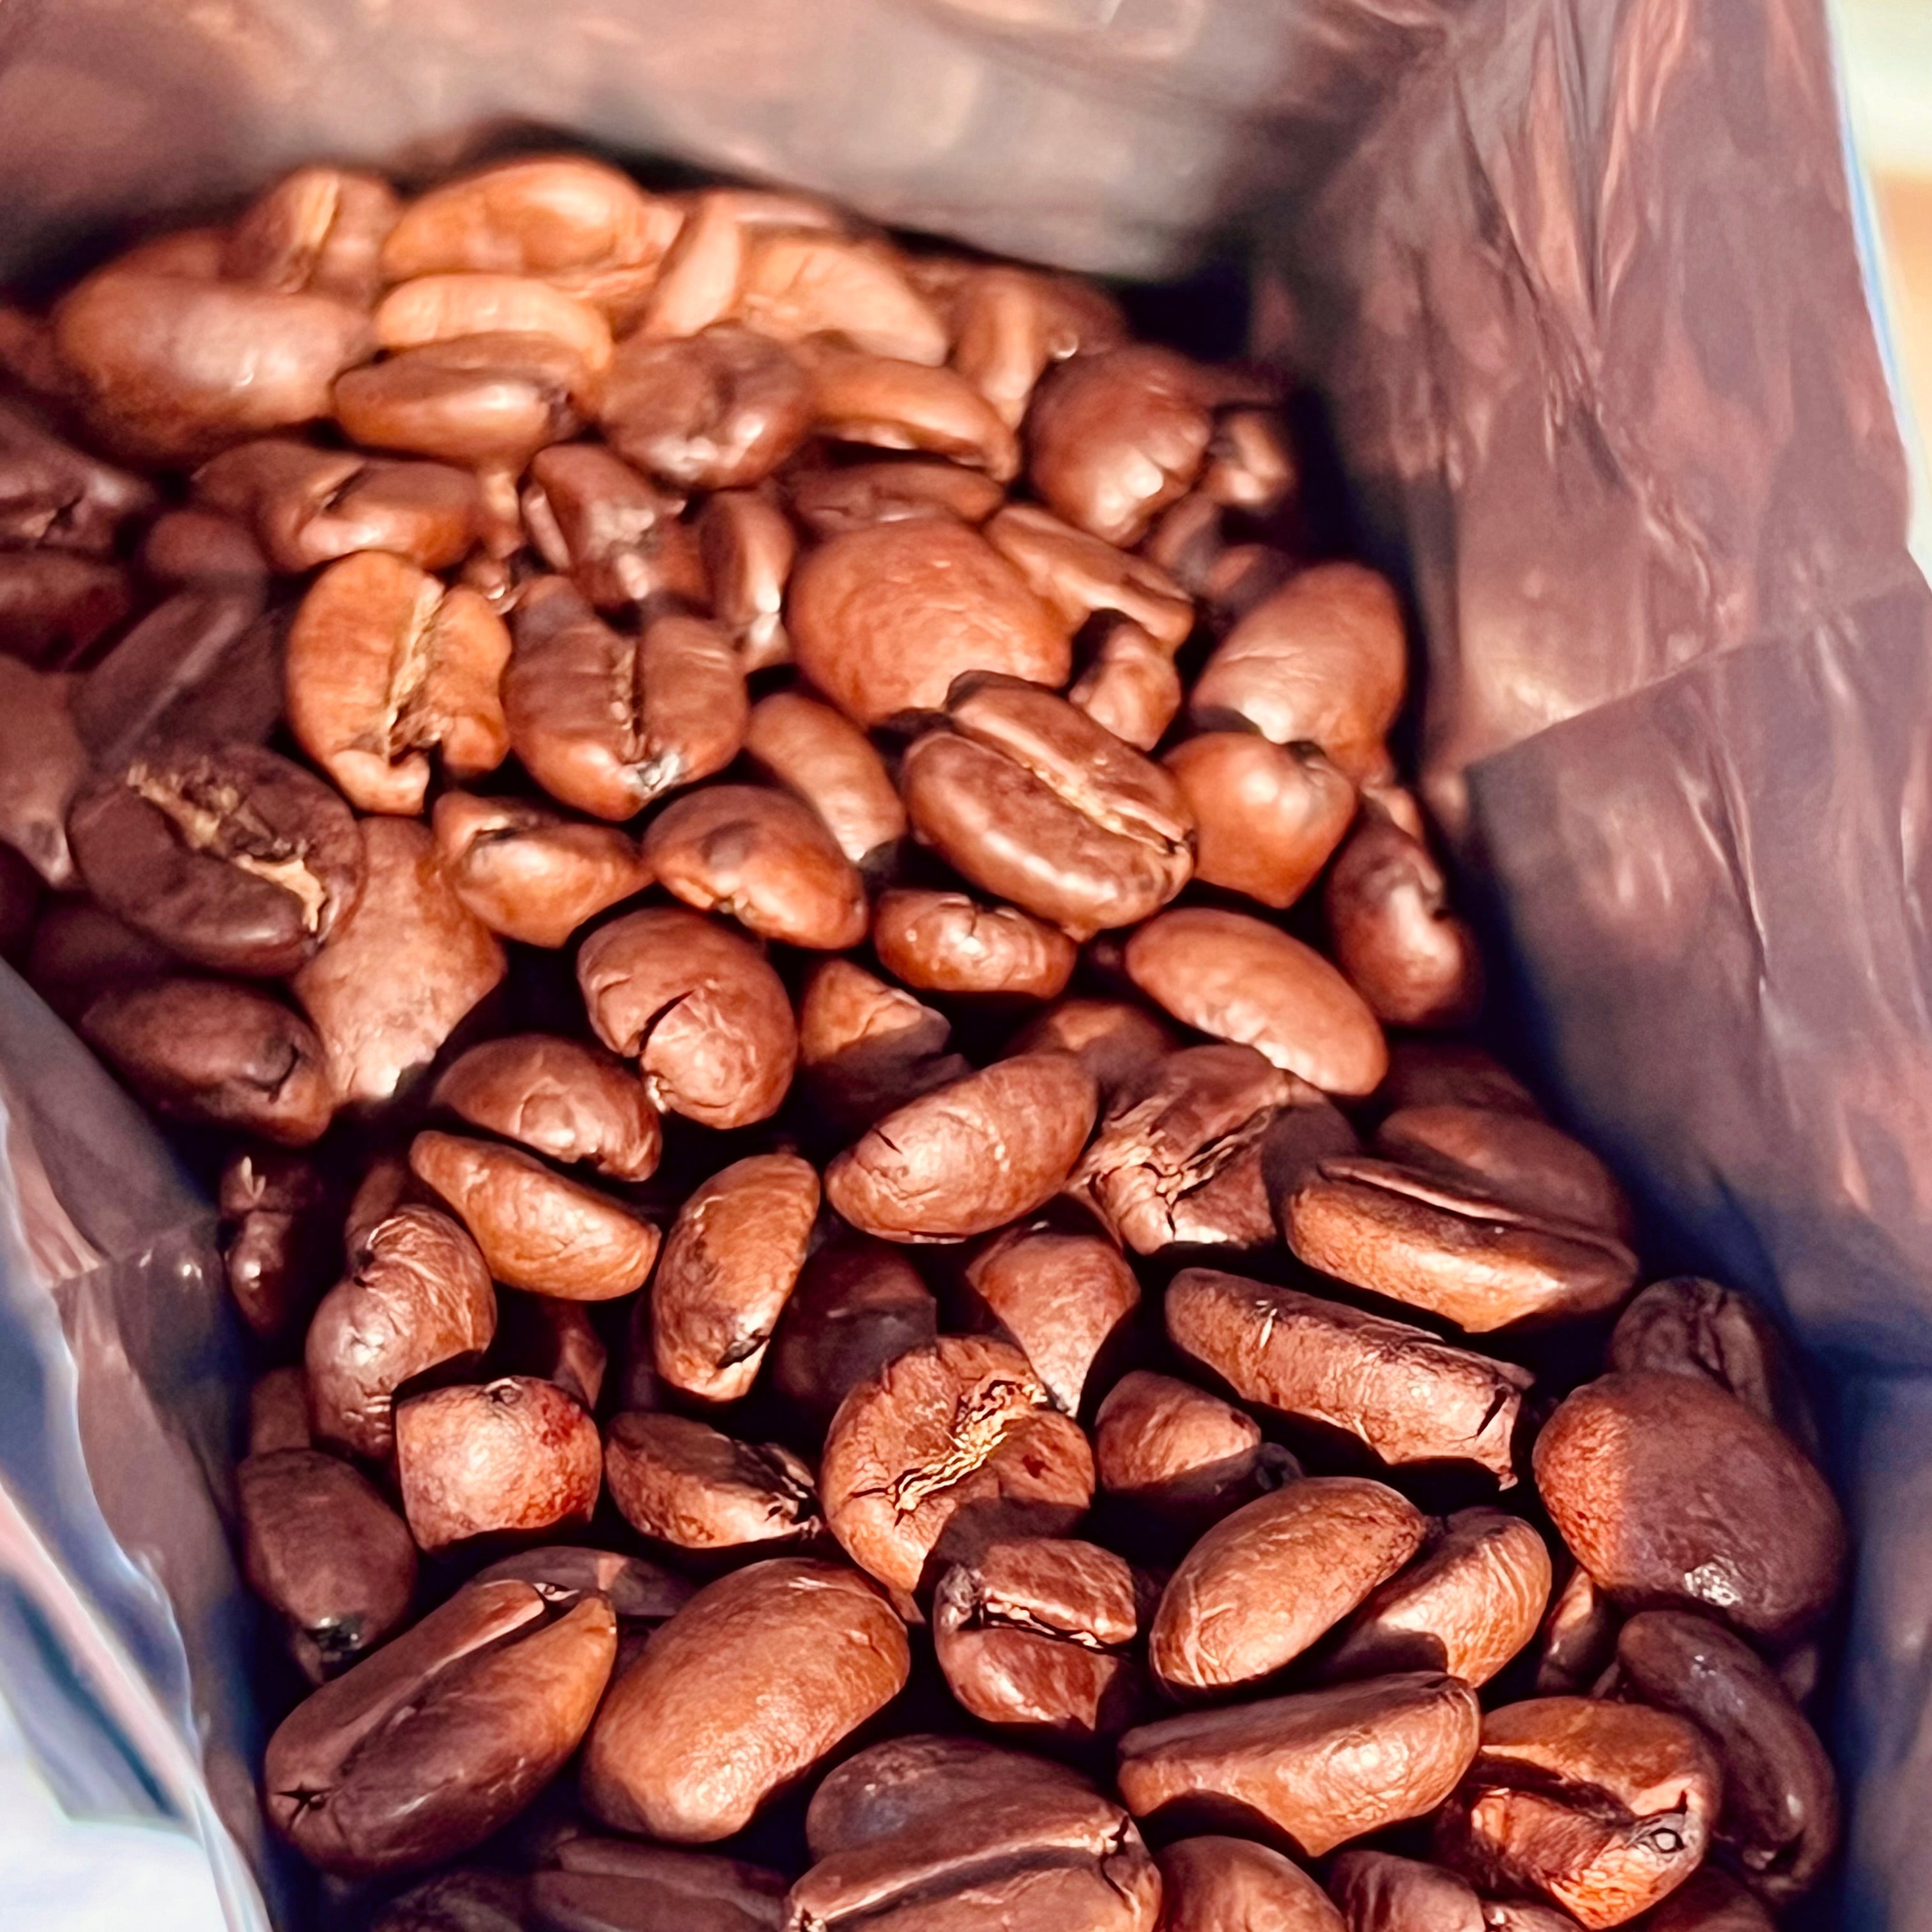 Indien Monsooned Malabar AA - Kaffee - Emma Spezialitätenkaffee